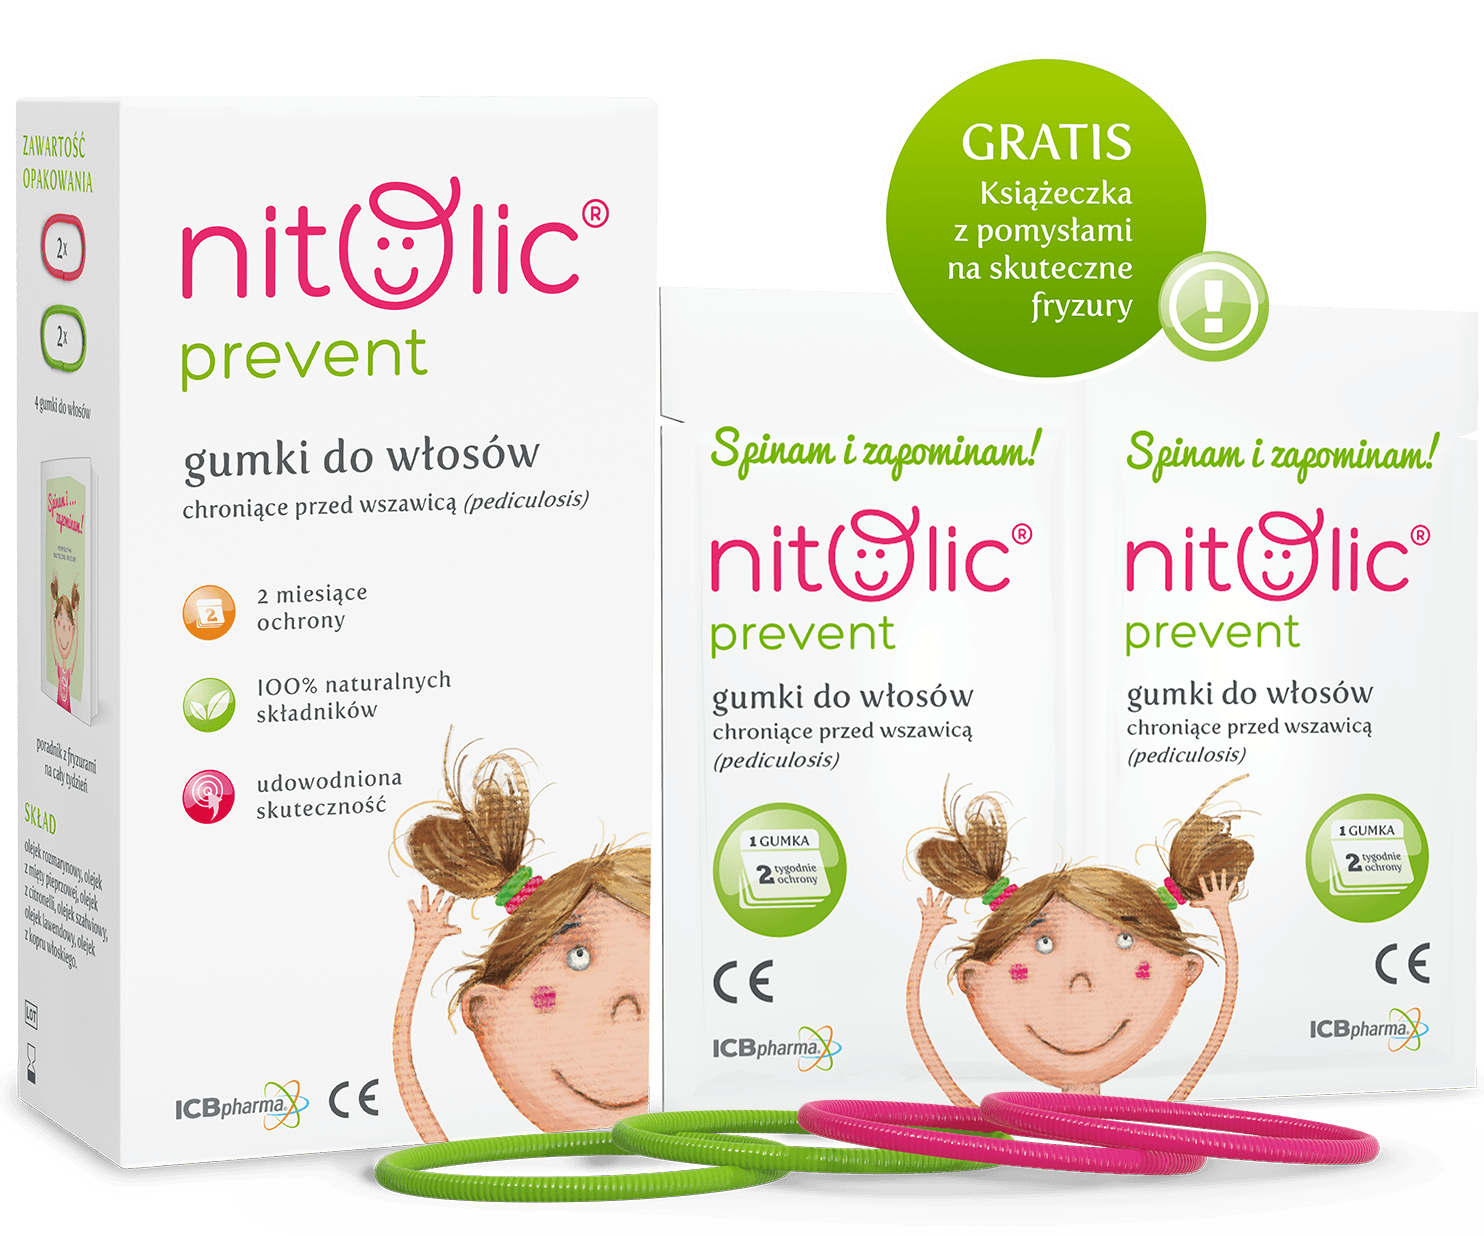 Nitolic® prevent – gumki do włosów - zdjęcie produktu